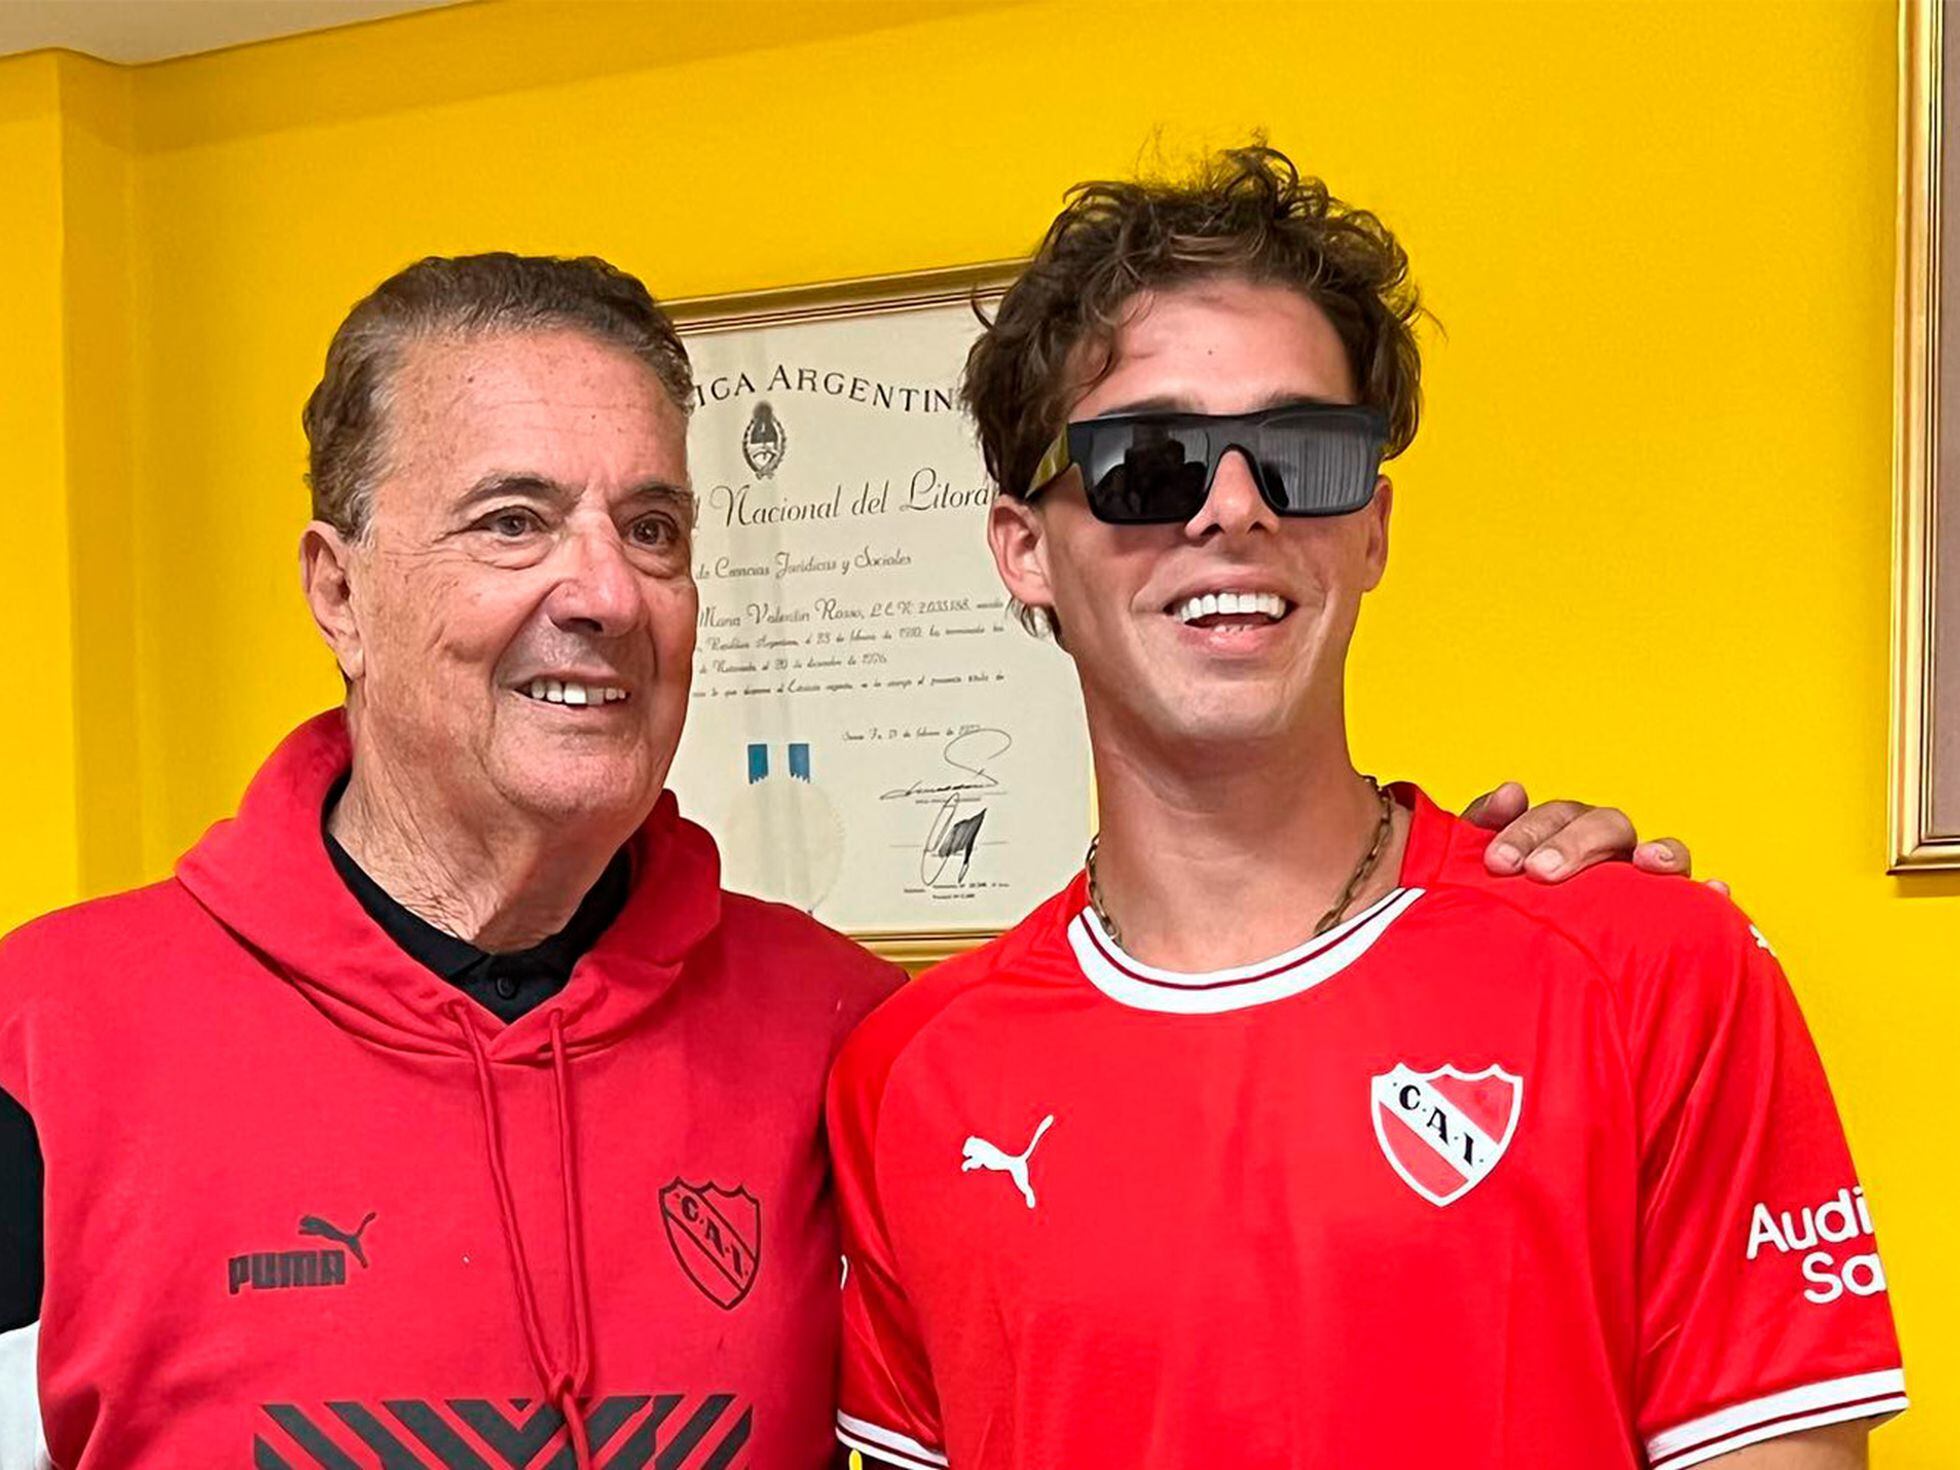 Santi Maratea: Un 'influencer' argentino reúne un millón de dólares en 24  horas para salvar al club Independiente